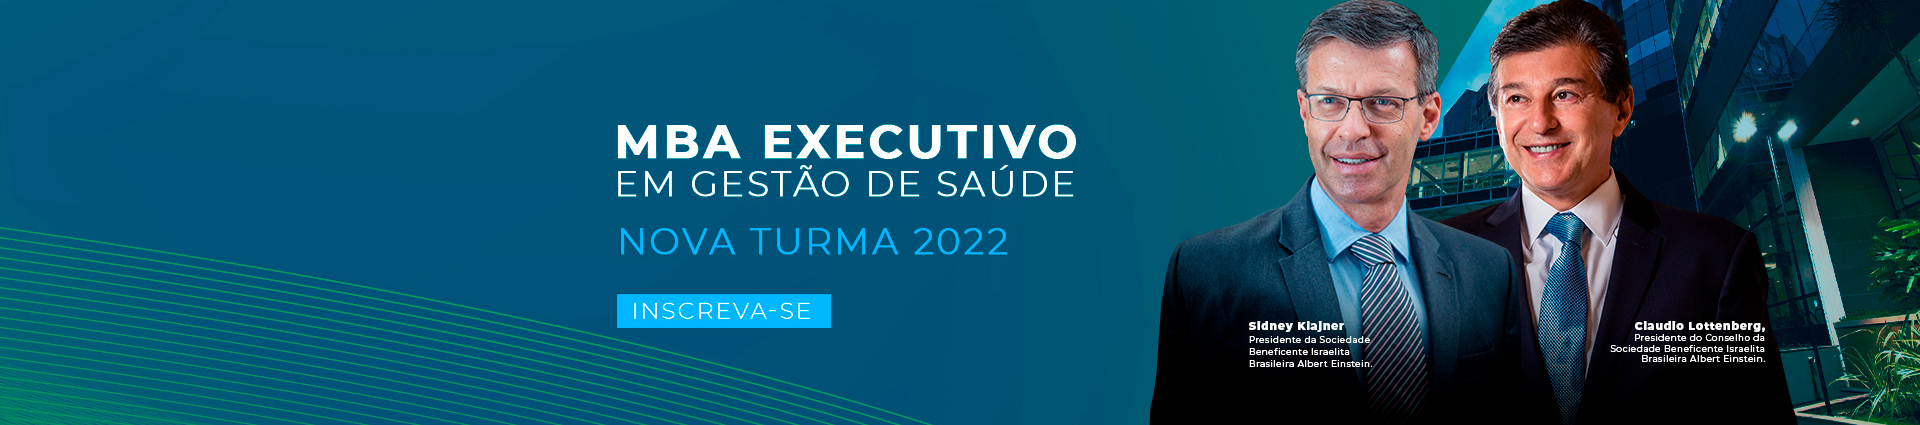 Banner_MBA-executivo_2022